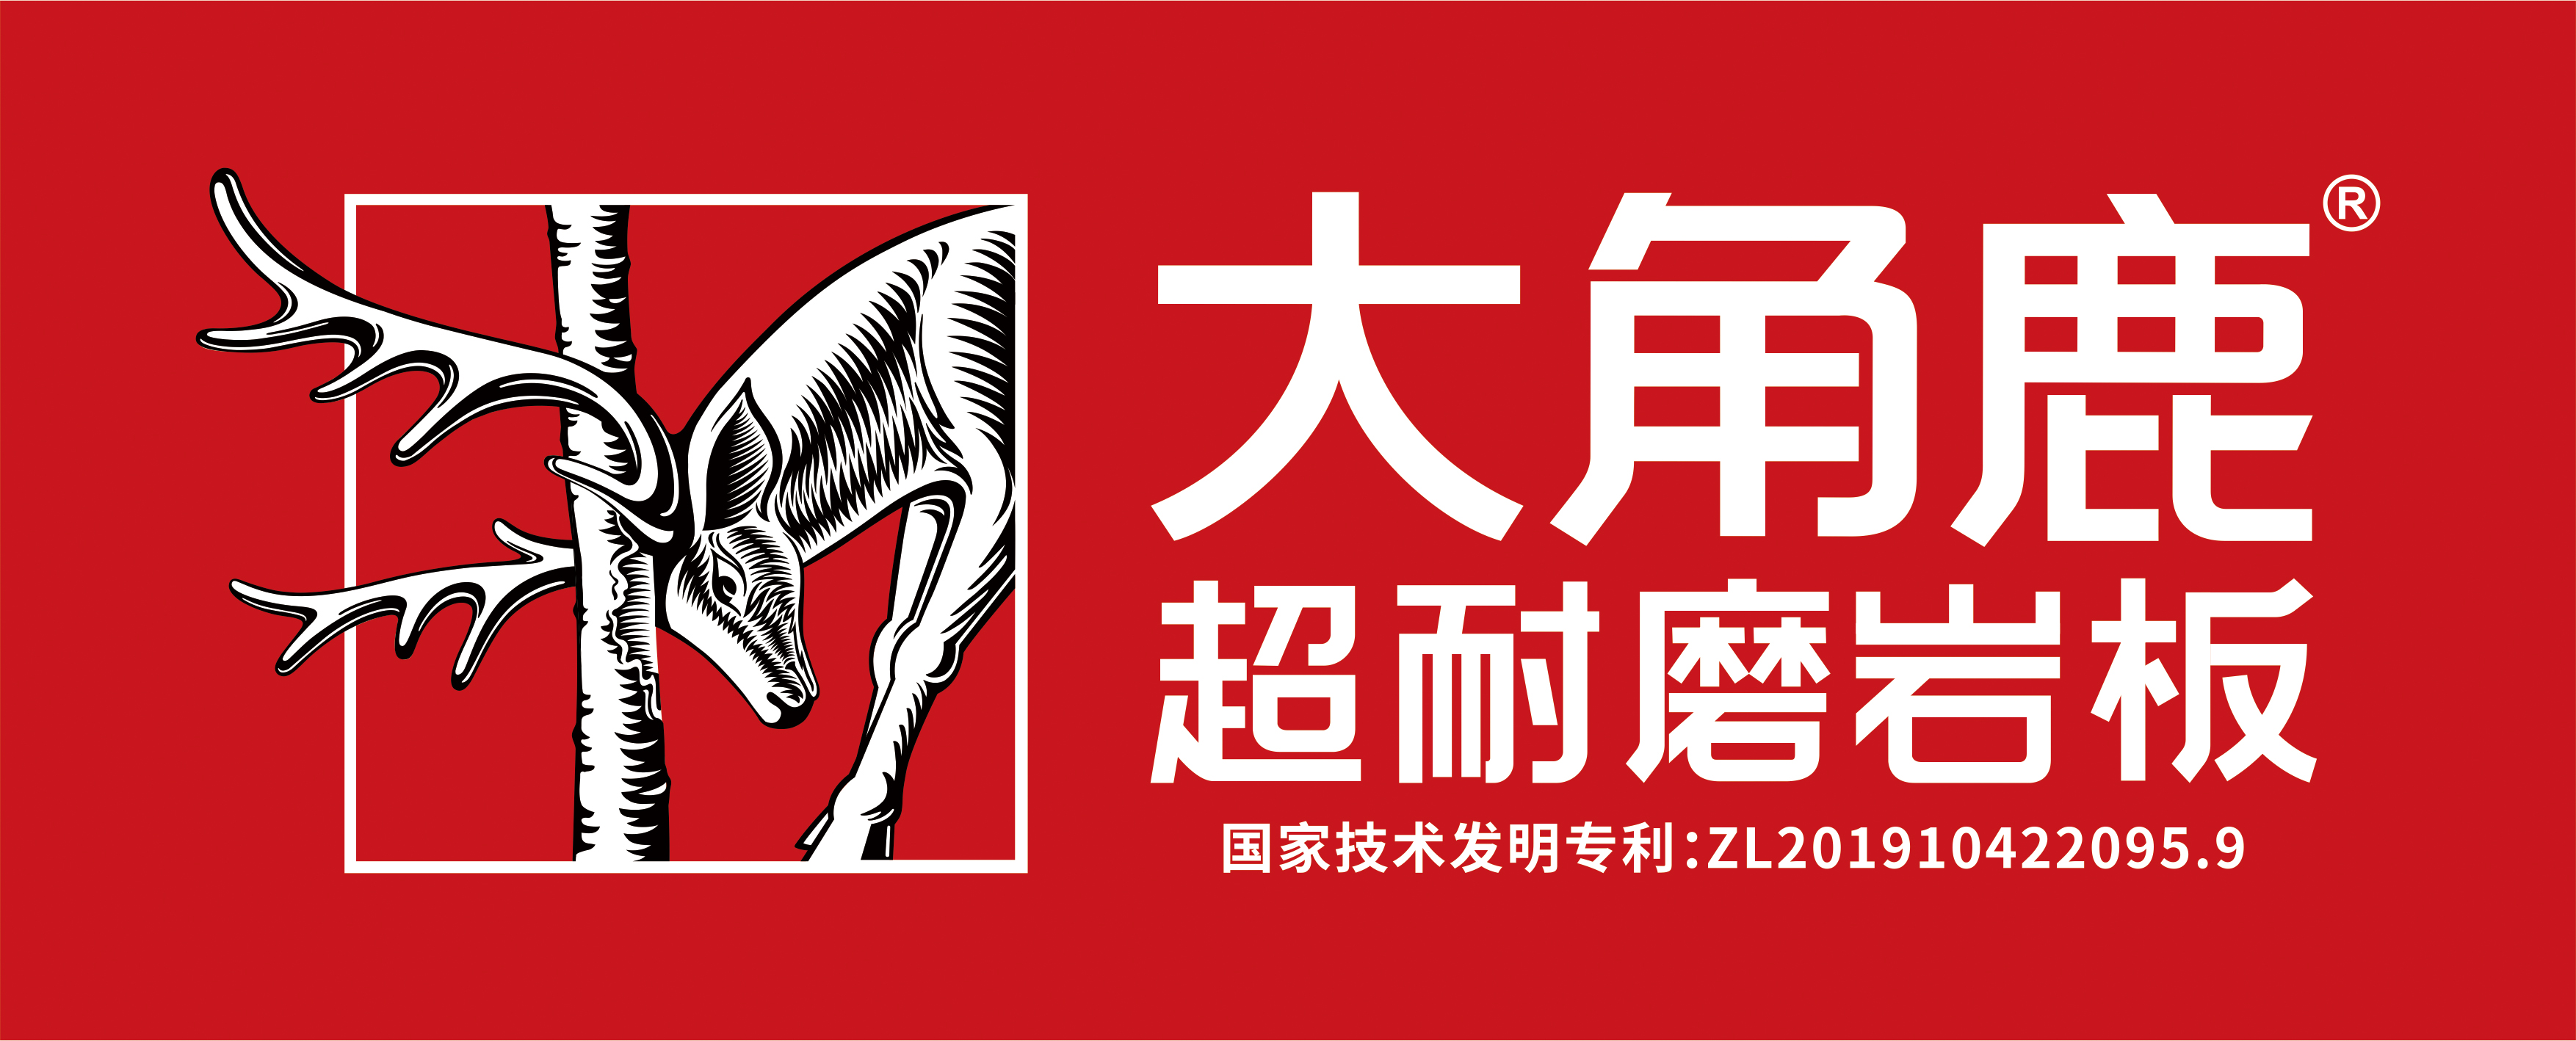 大角鹿巖板logo